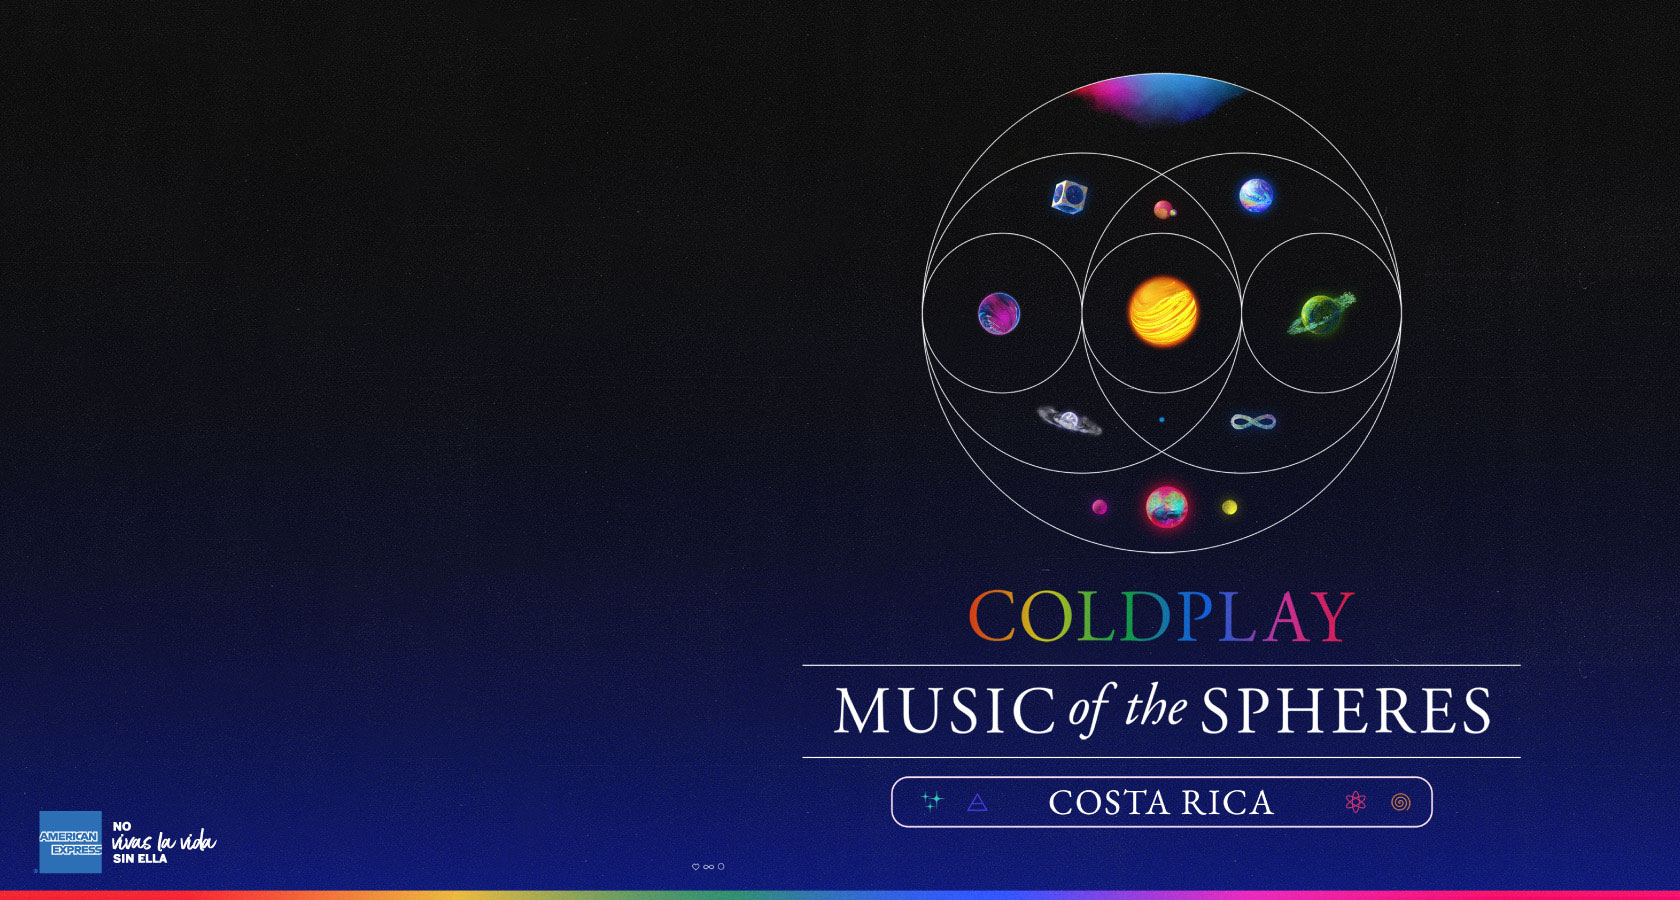 Publicidad de concierto de Coldplay